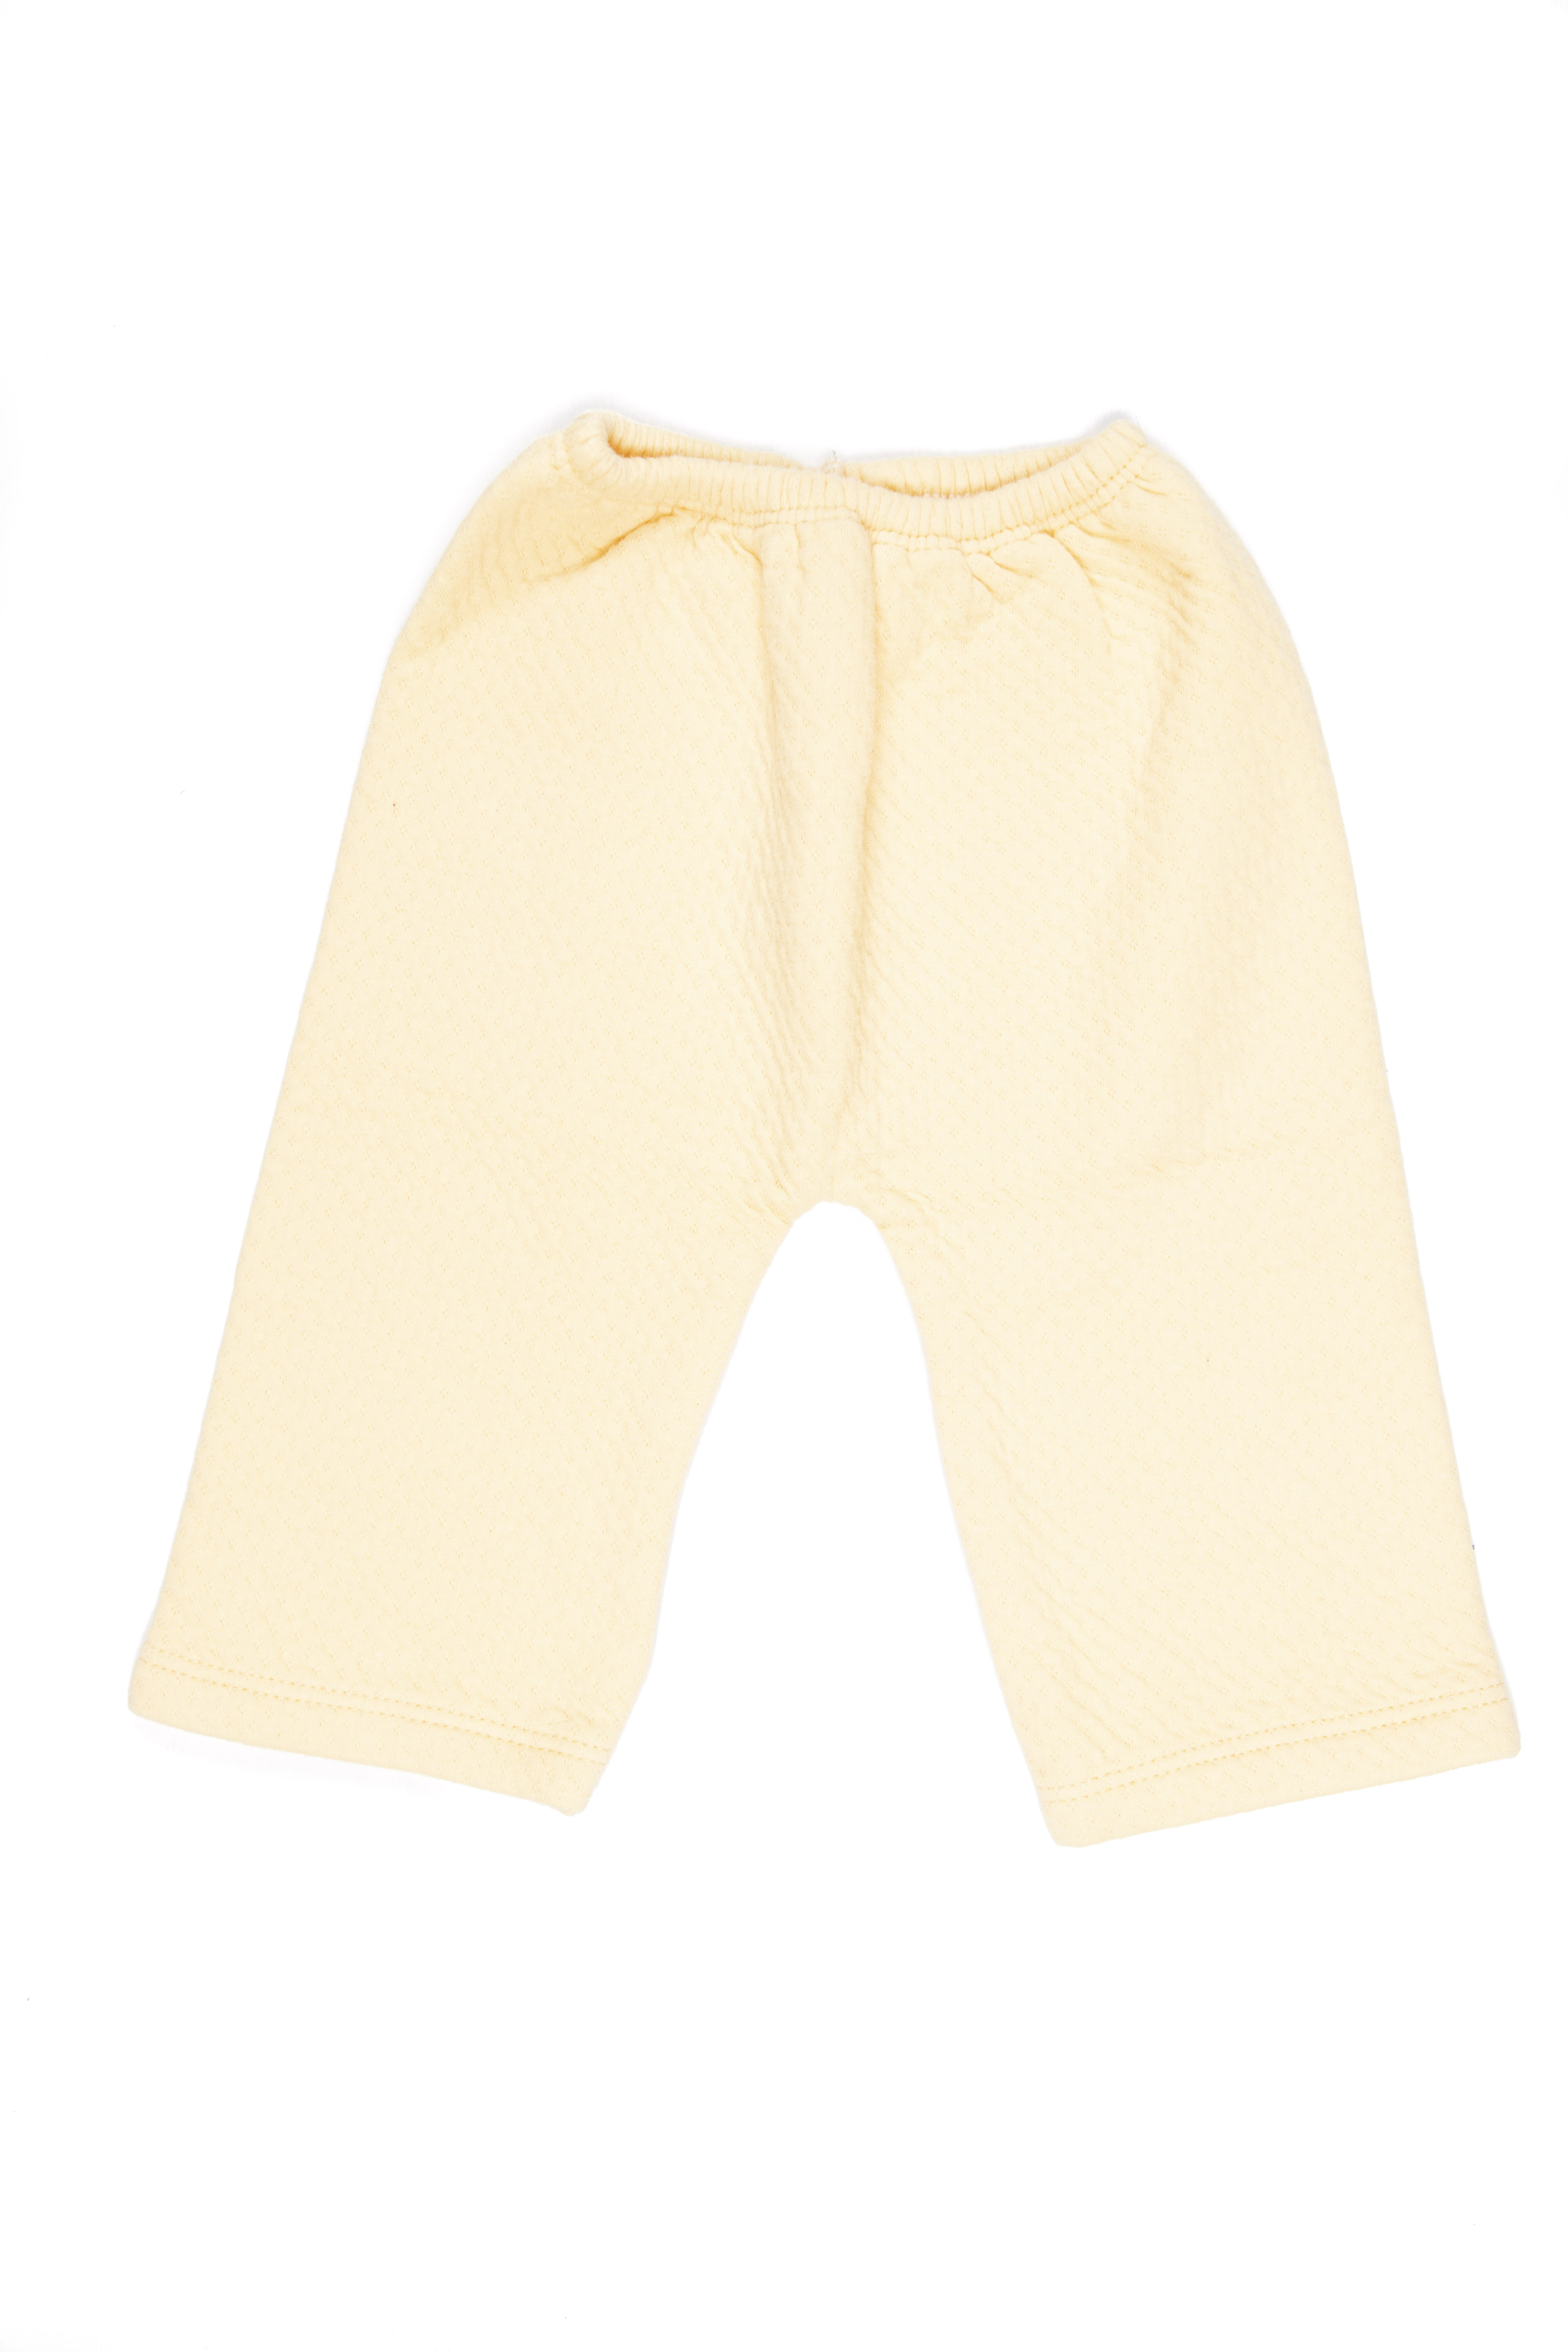 Saquito y pantalón algodón grueso amarillo